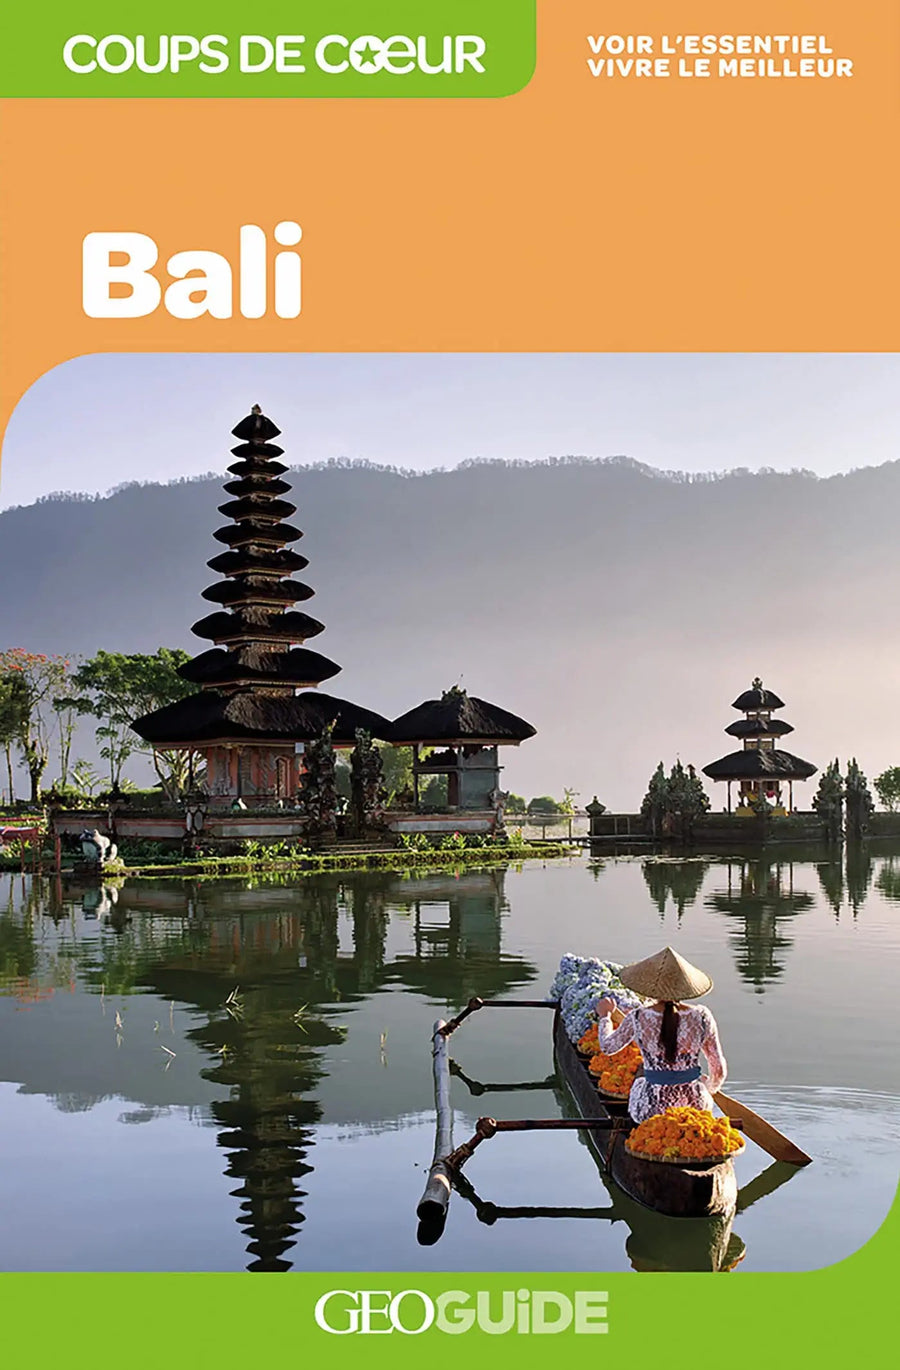 Géoguide (coups de coeur) - Bali | Gallimard guide de voyage Gallimard 